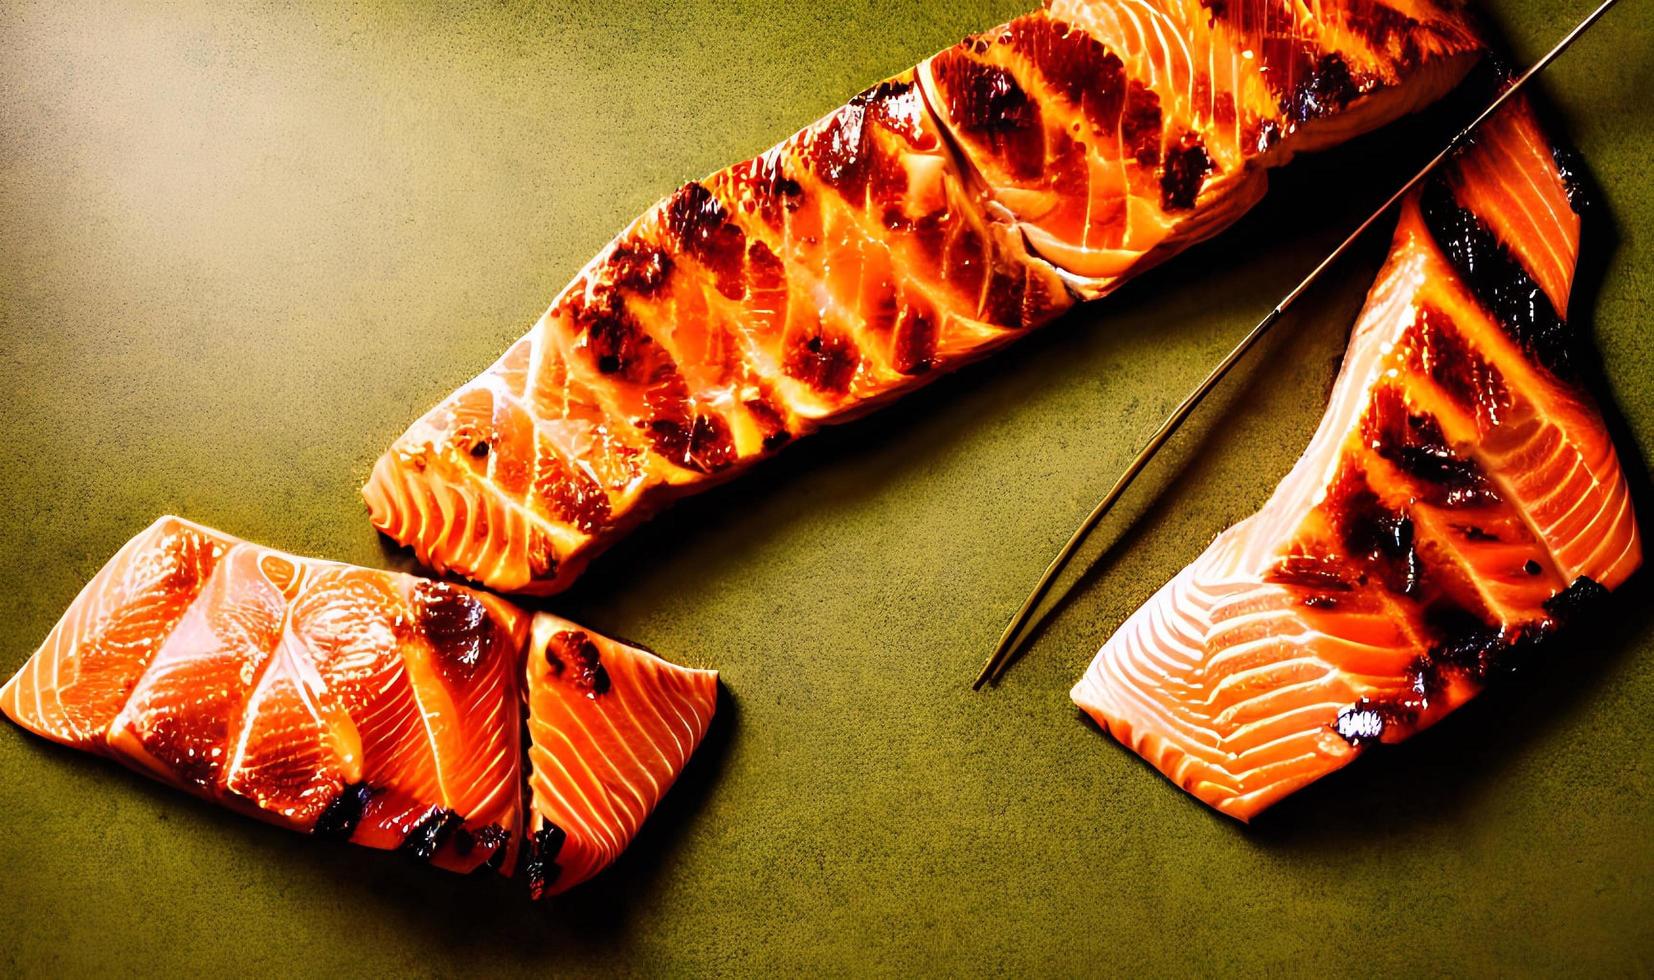 grigliato salmone. salutare cibo al forno salmone. caldo pesce piatto. foto